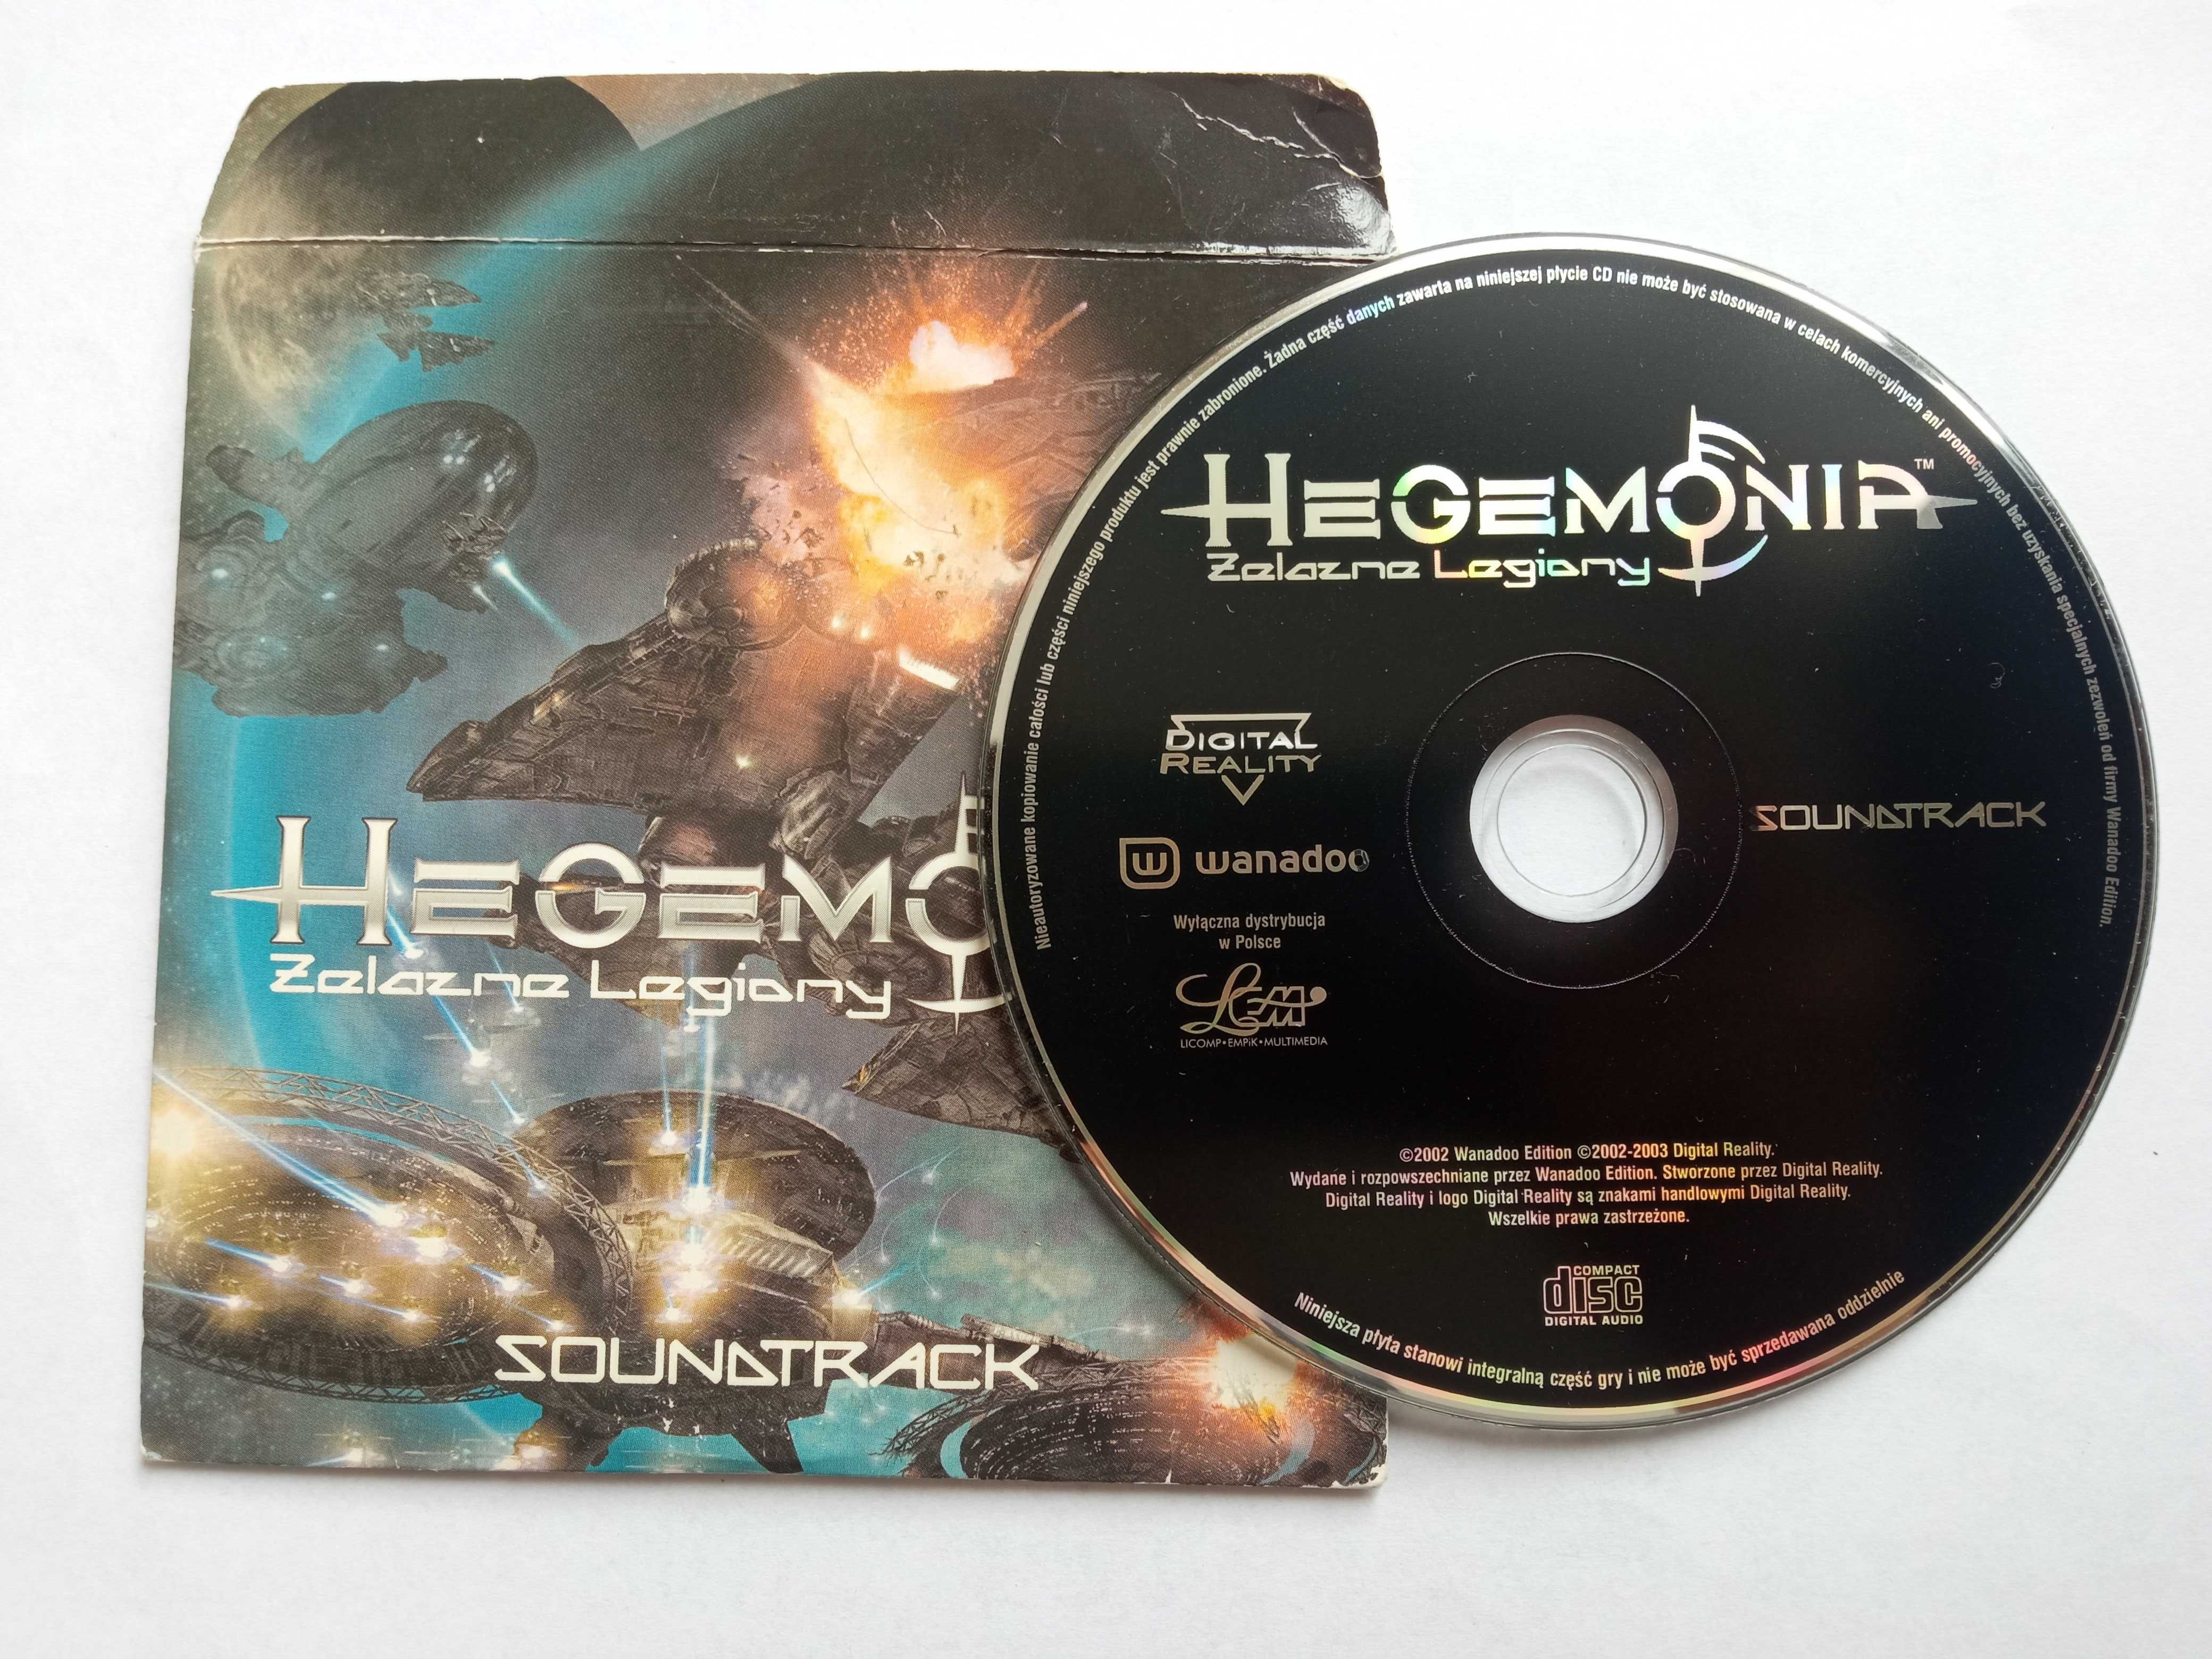 Hegemonia Żelazne Golemy Soundtrack Płyta CD z muzyką